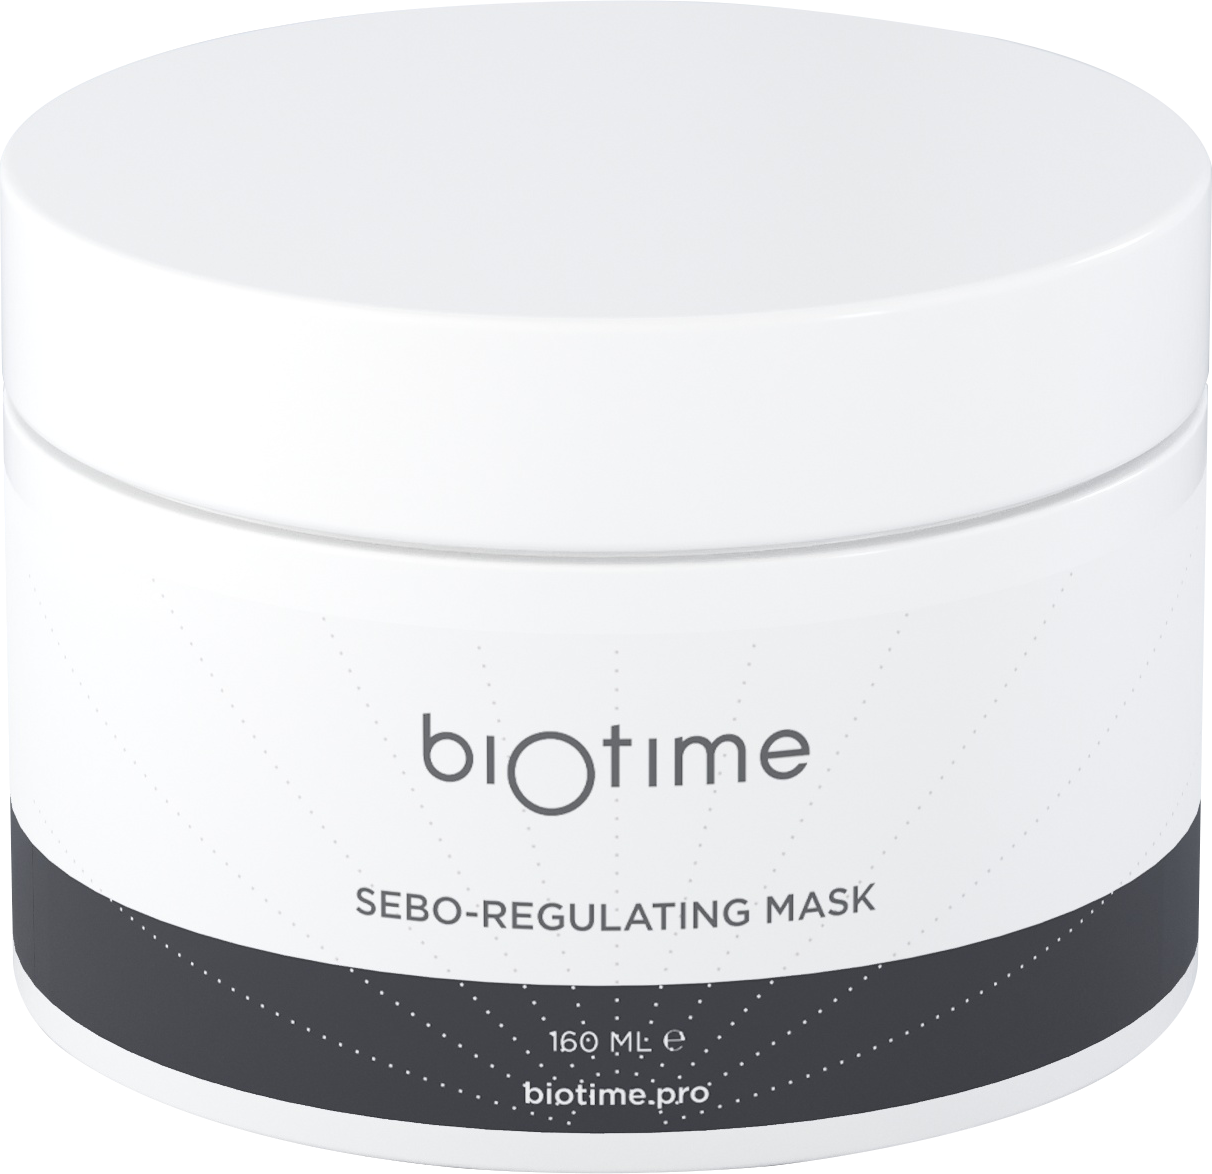 Biotime Sebo-Regulating mask